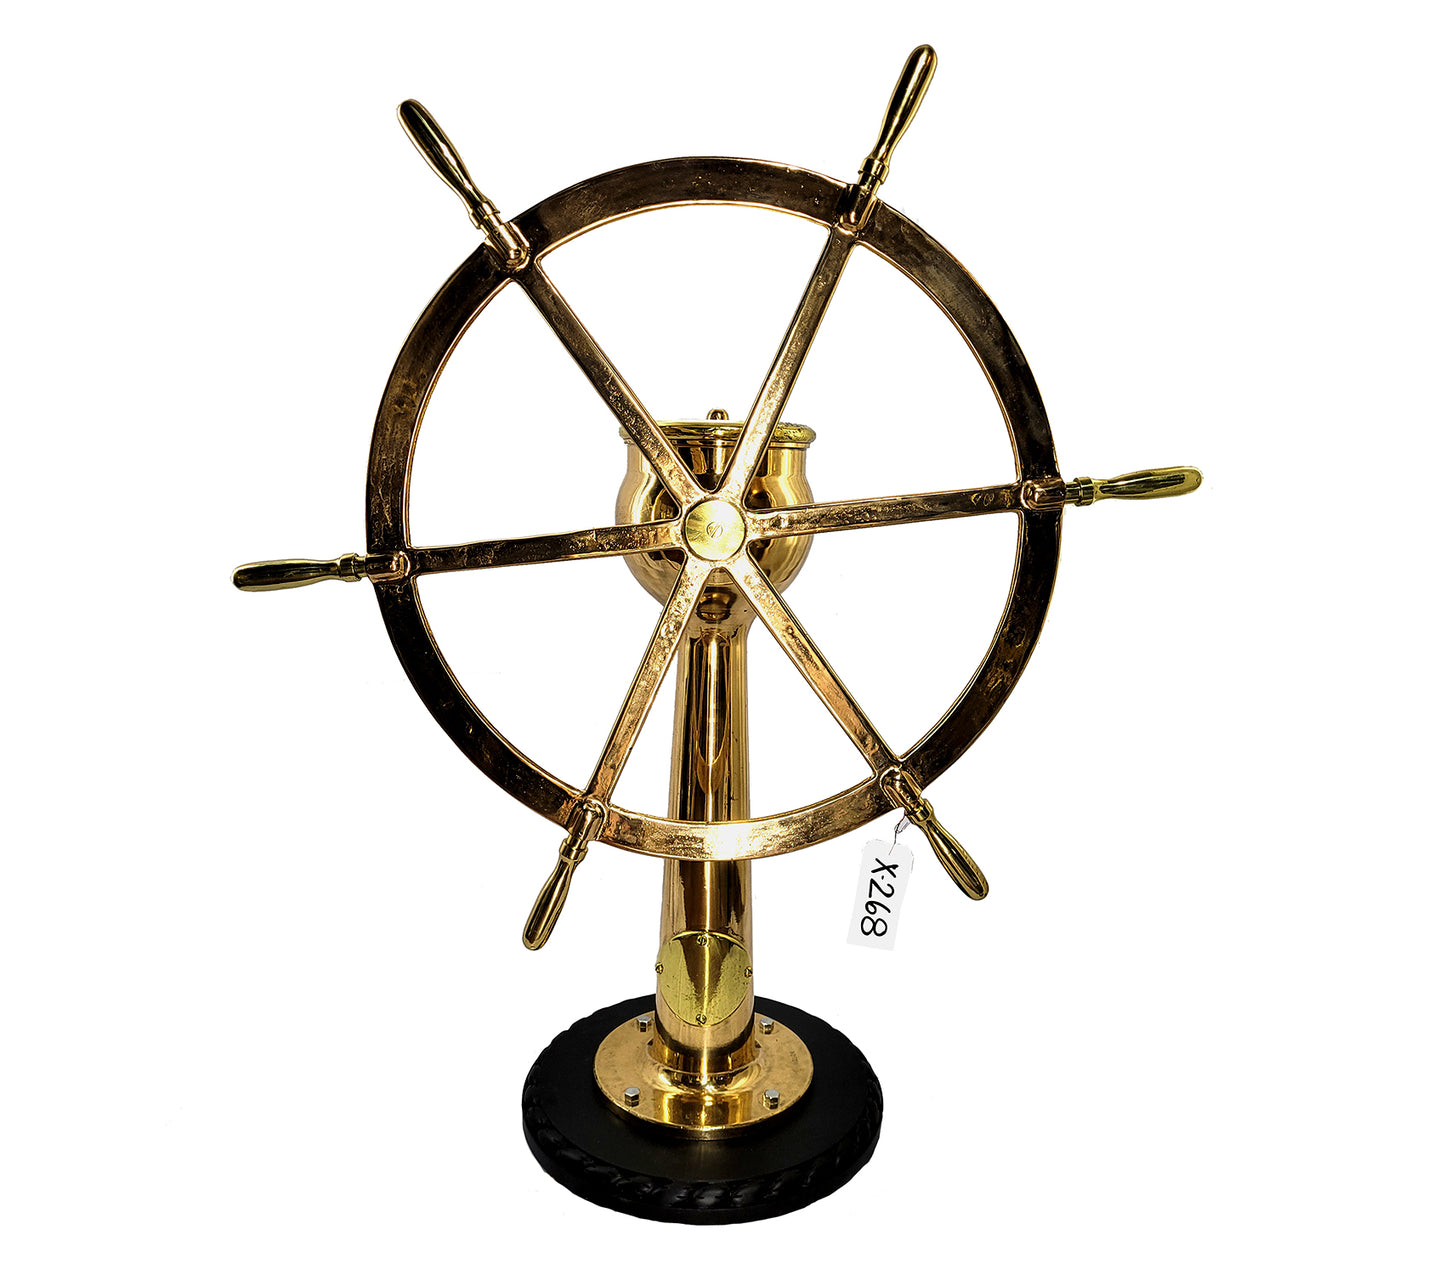 Six Spoke Solid Brass Ships Wheel on Stand - Lannan Gallery